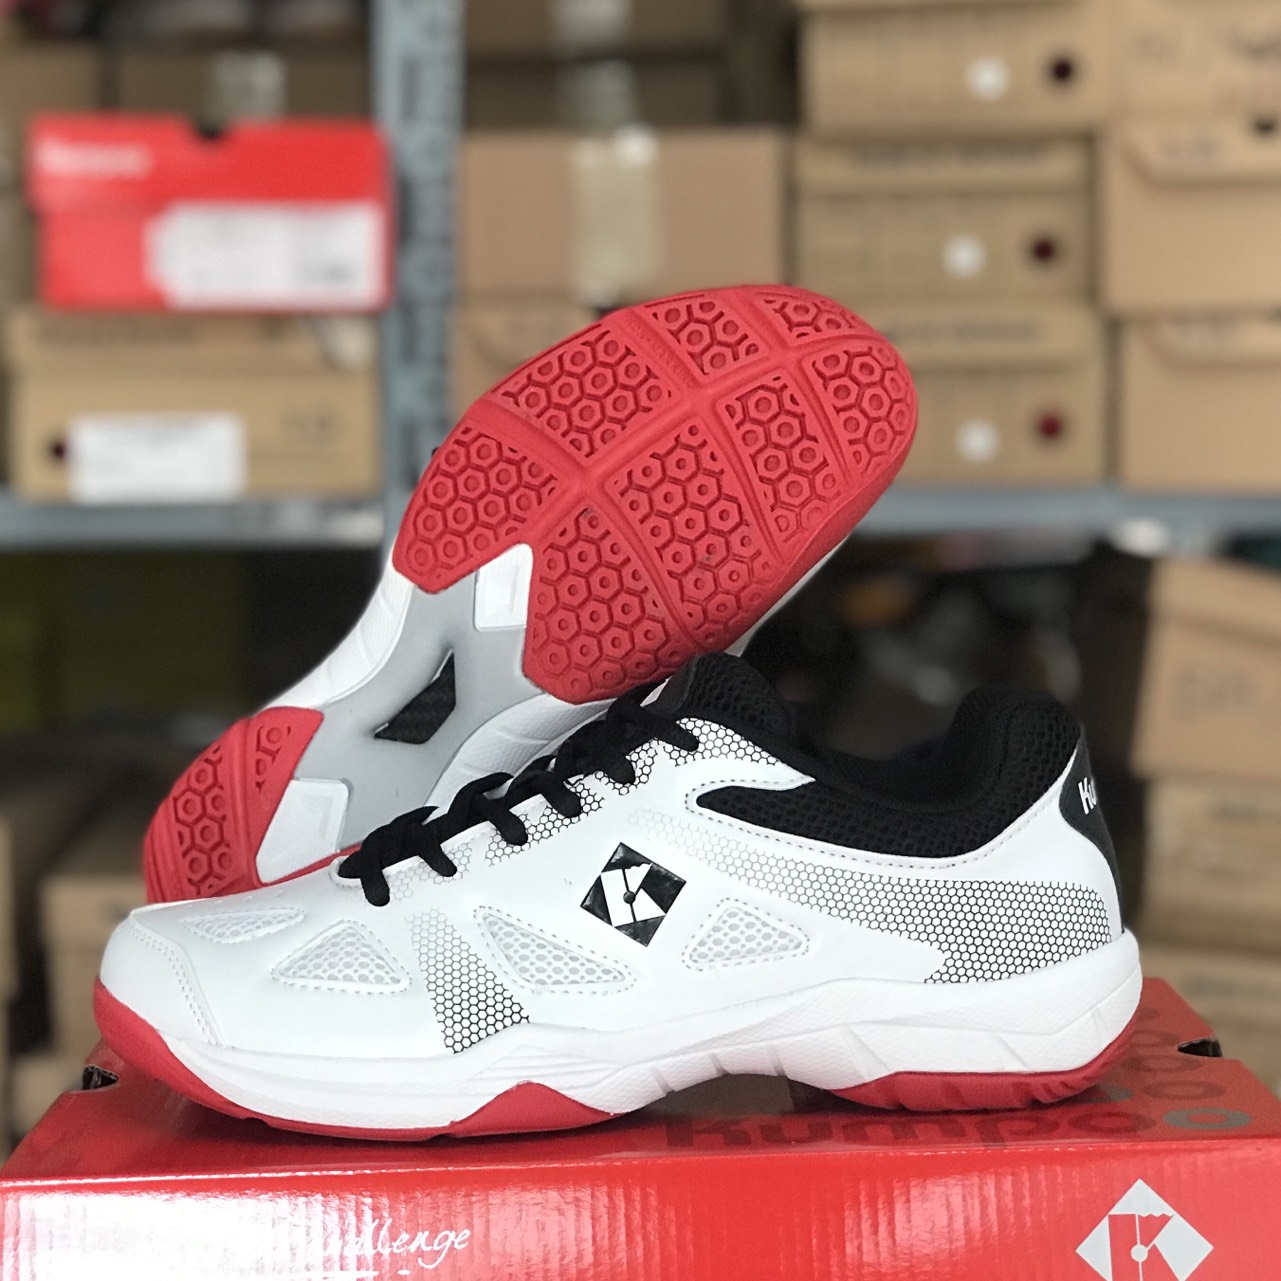 Giày bóng chuyền, cầu lông Kumpoo KH-E23 mẫu mới dành cho nam và nữ đủ size 36-44 - màu trắng phối đỏ đen